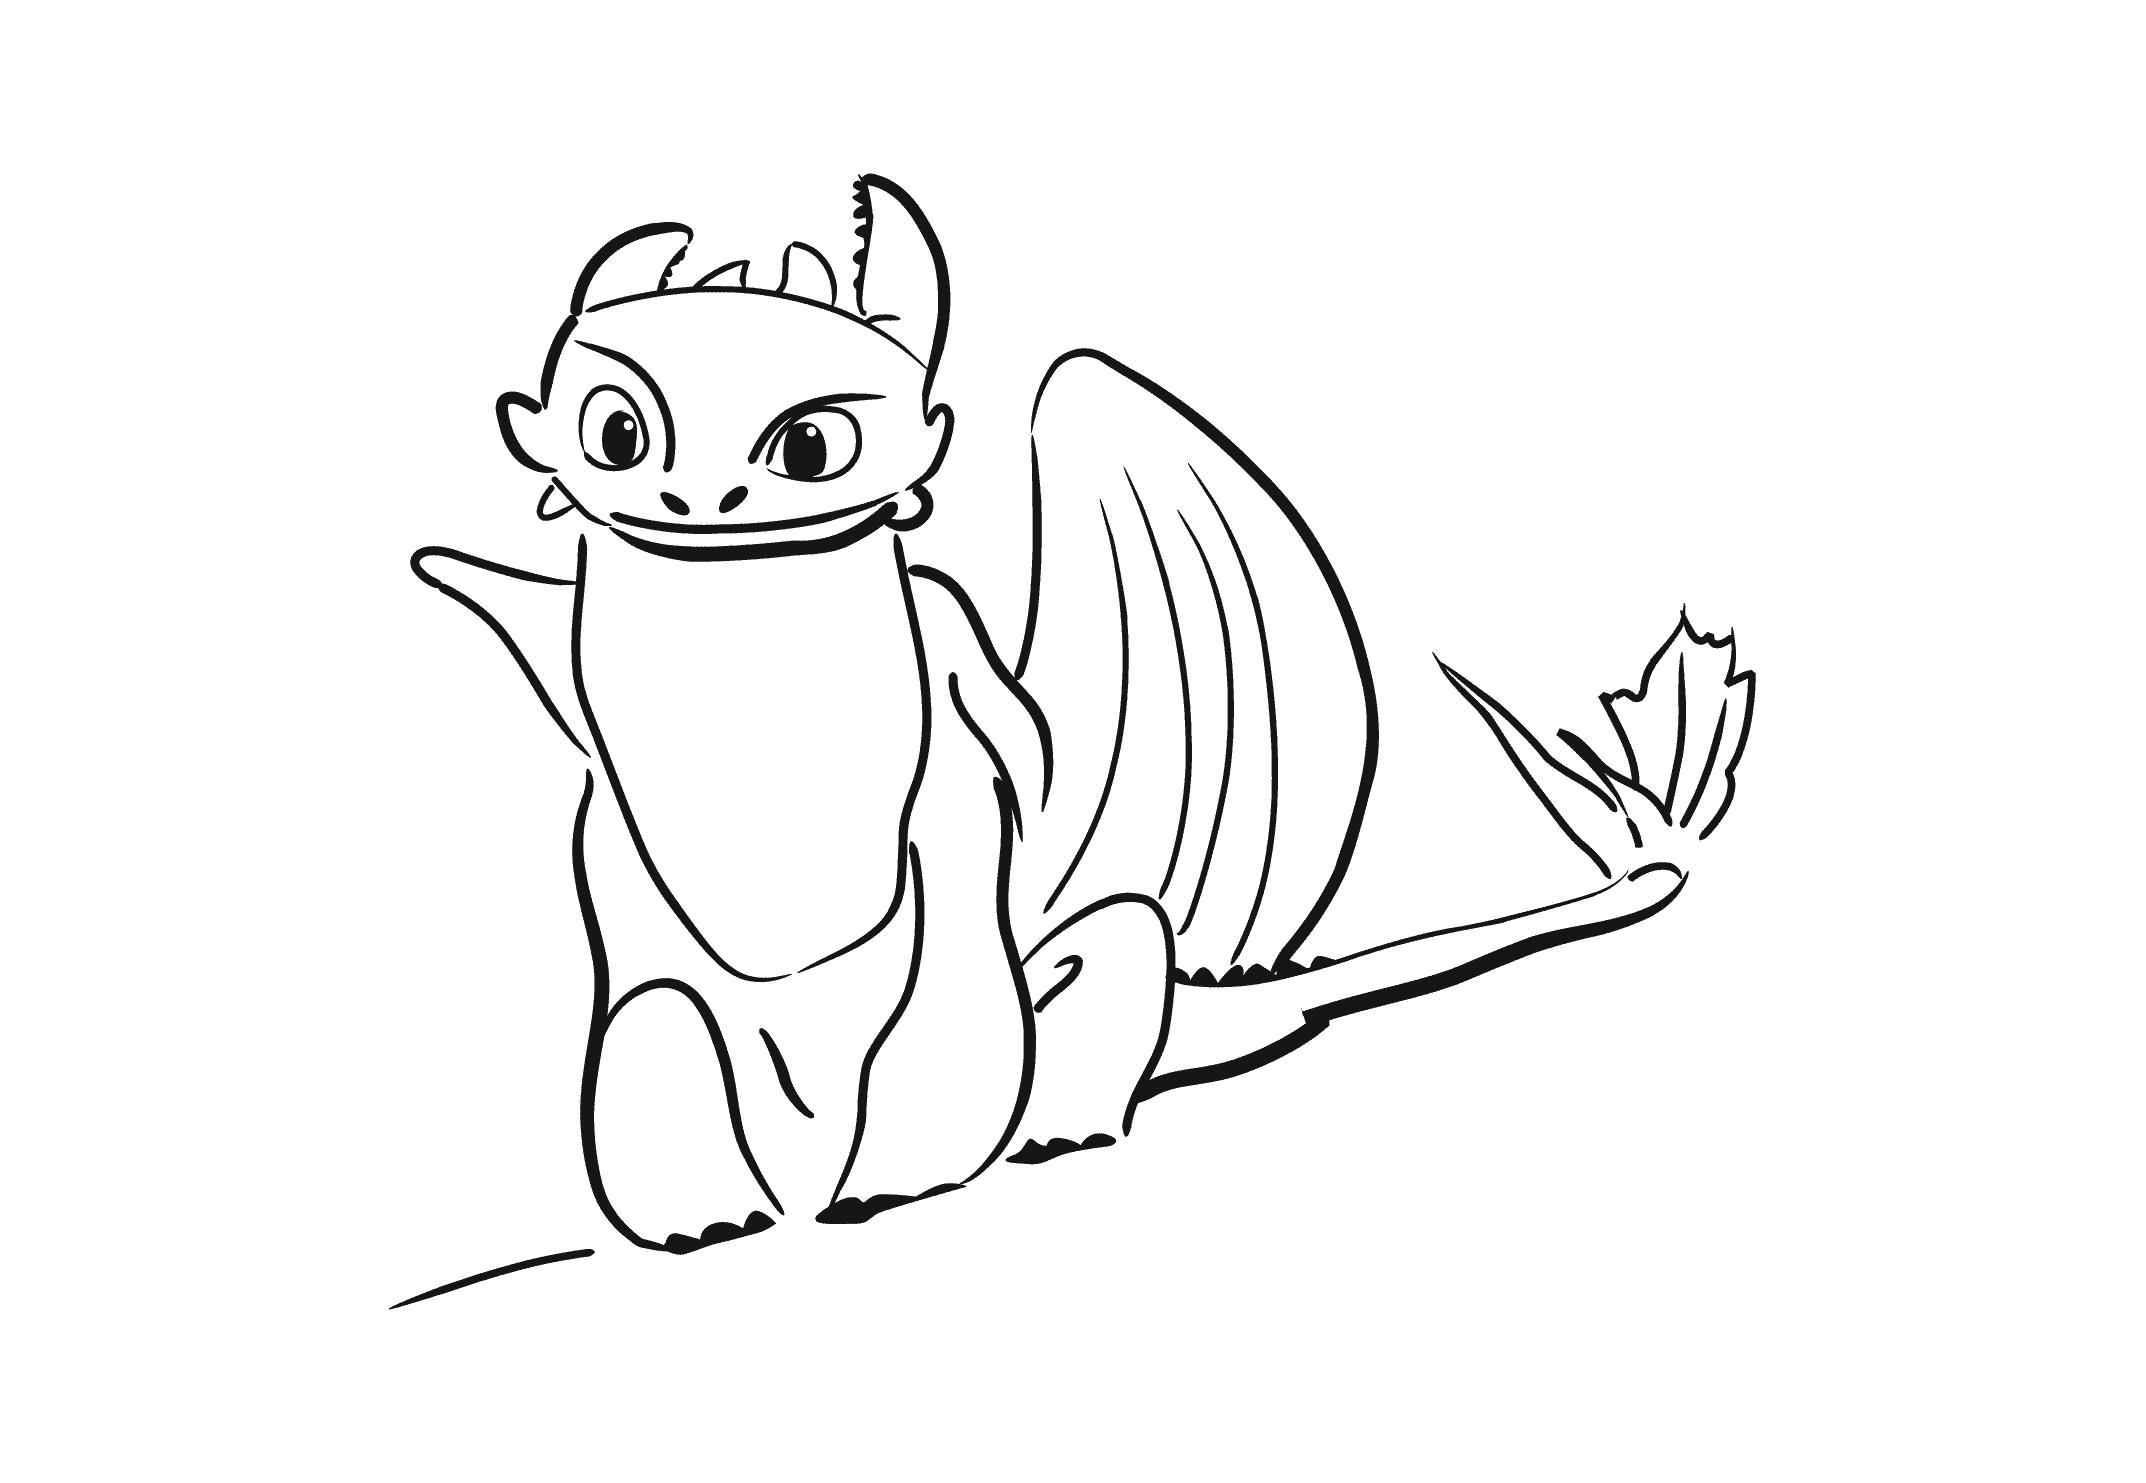 Название: Раскраска Беззубик - раскраска из мультфильма Как приручить дракона, для детей (Распечатать/скачать). Категория: мифические существа. Теги: дракон.